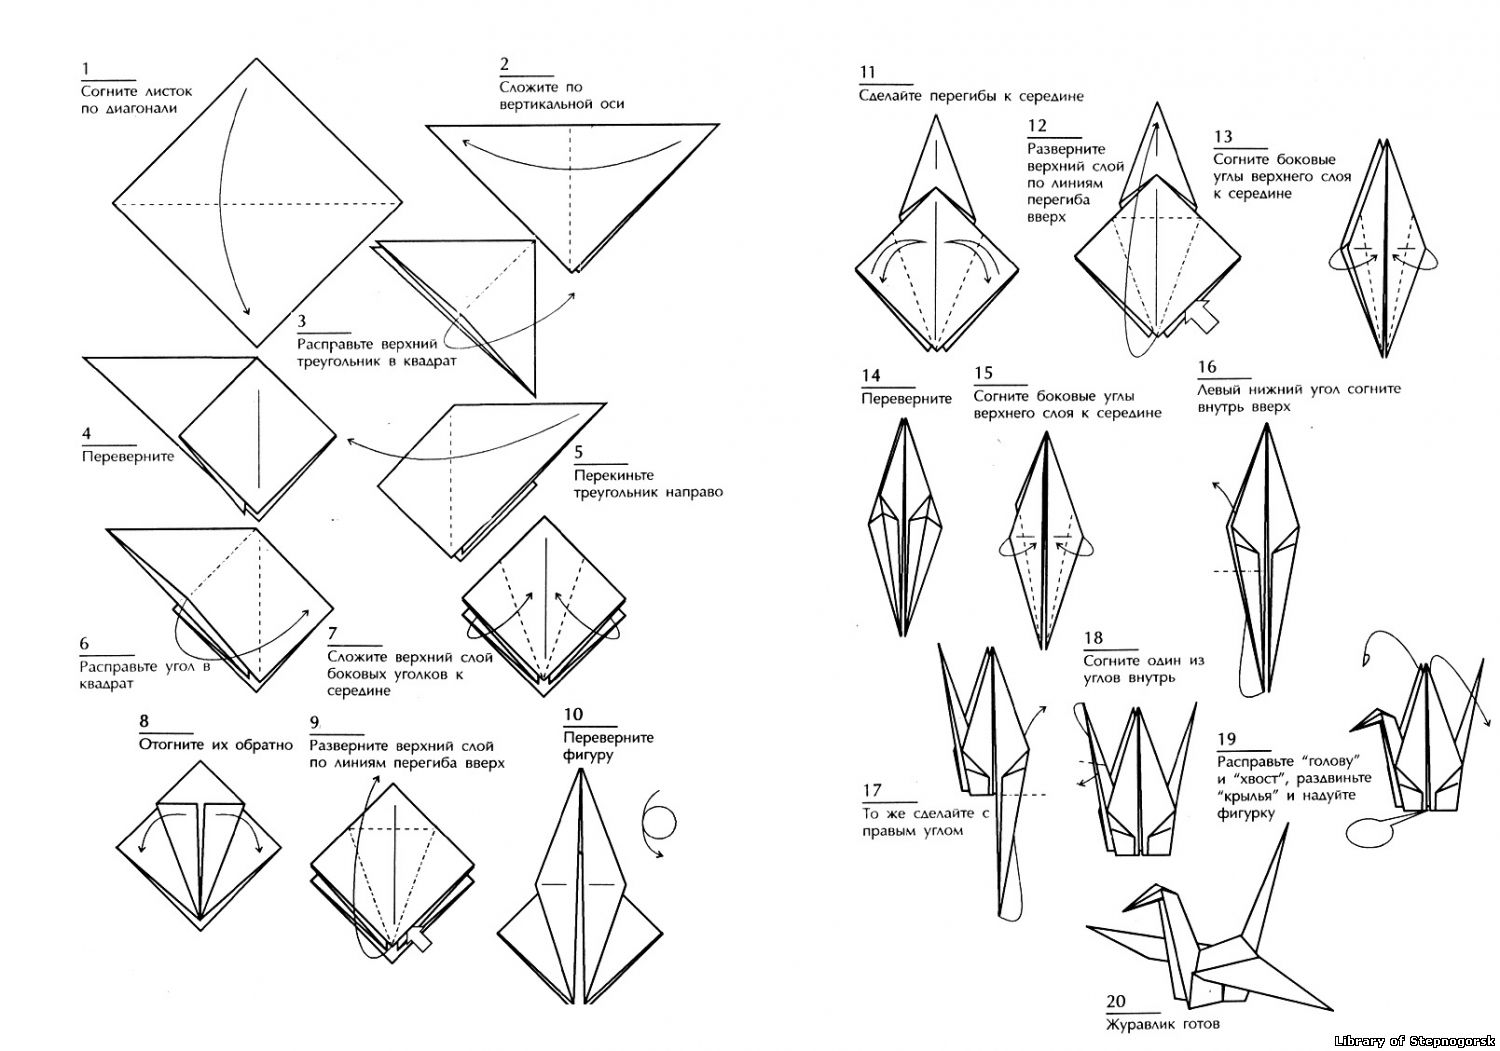 Оригами журавлик способы. Оригами из бумаги Журавлик схема для начинающих. Схема сборки журавлика оригами. Оригами из бумаги для начинающих Журавлик схема пошагово. Японский Журавлик схема сборки.